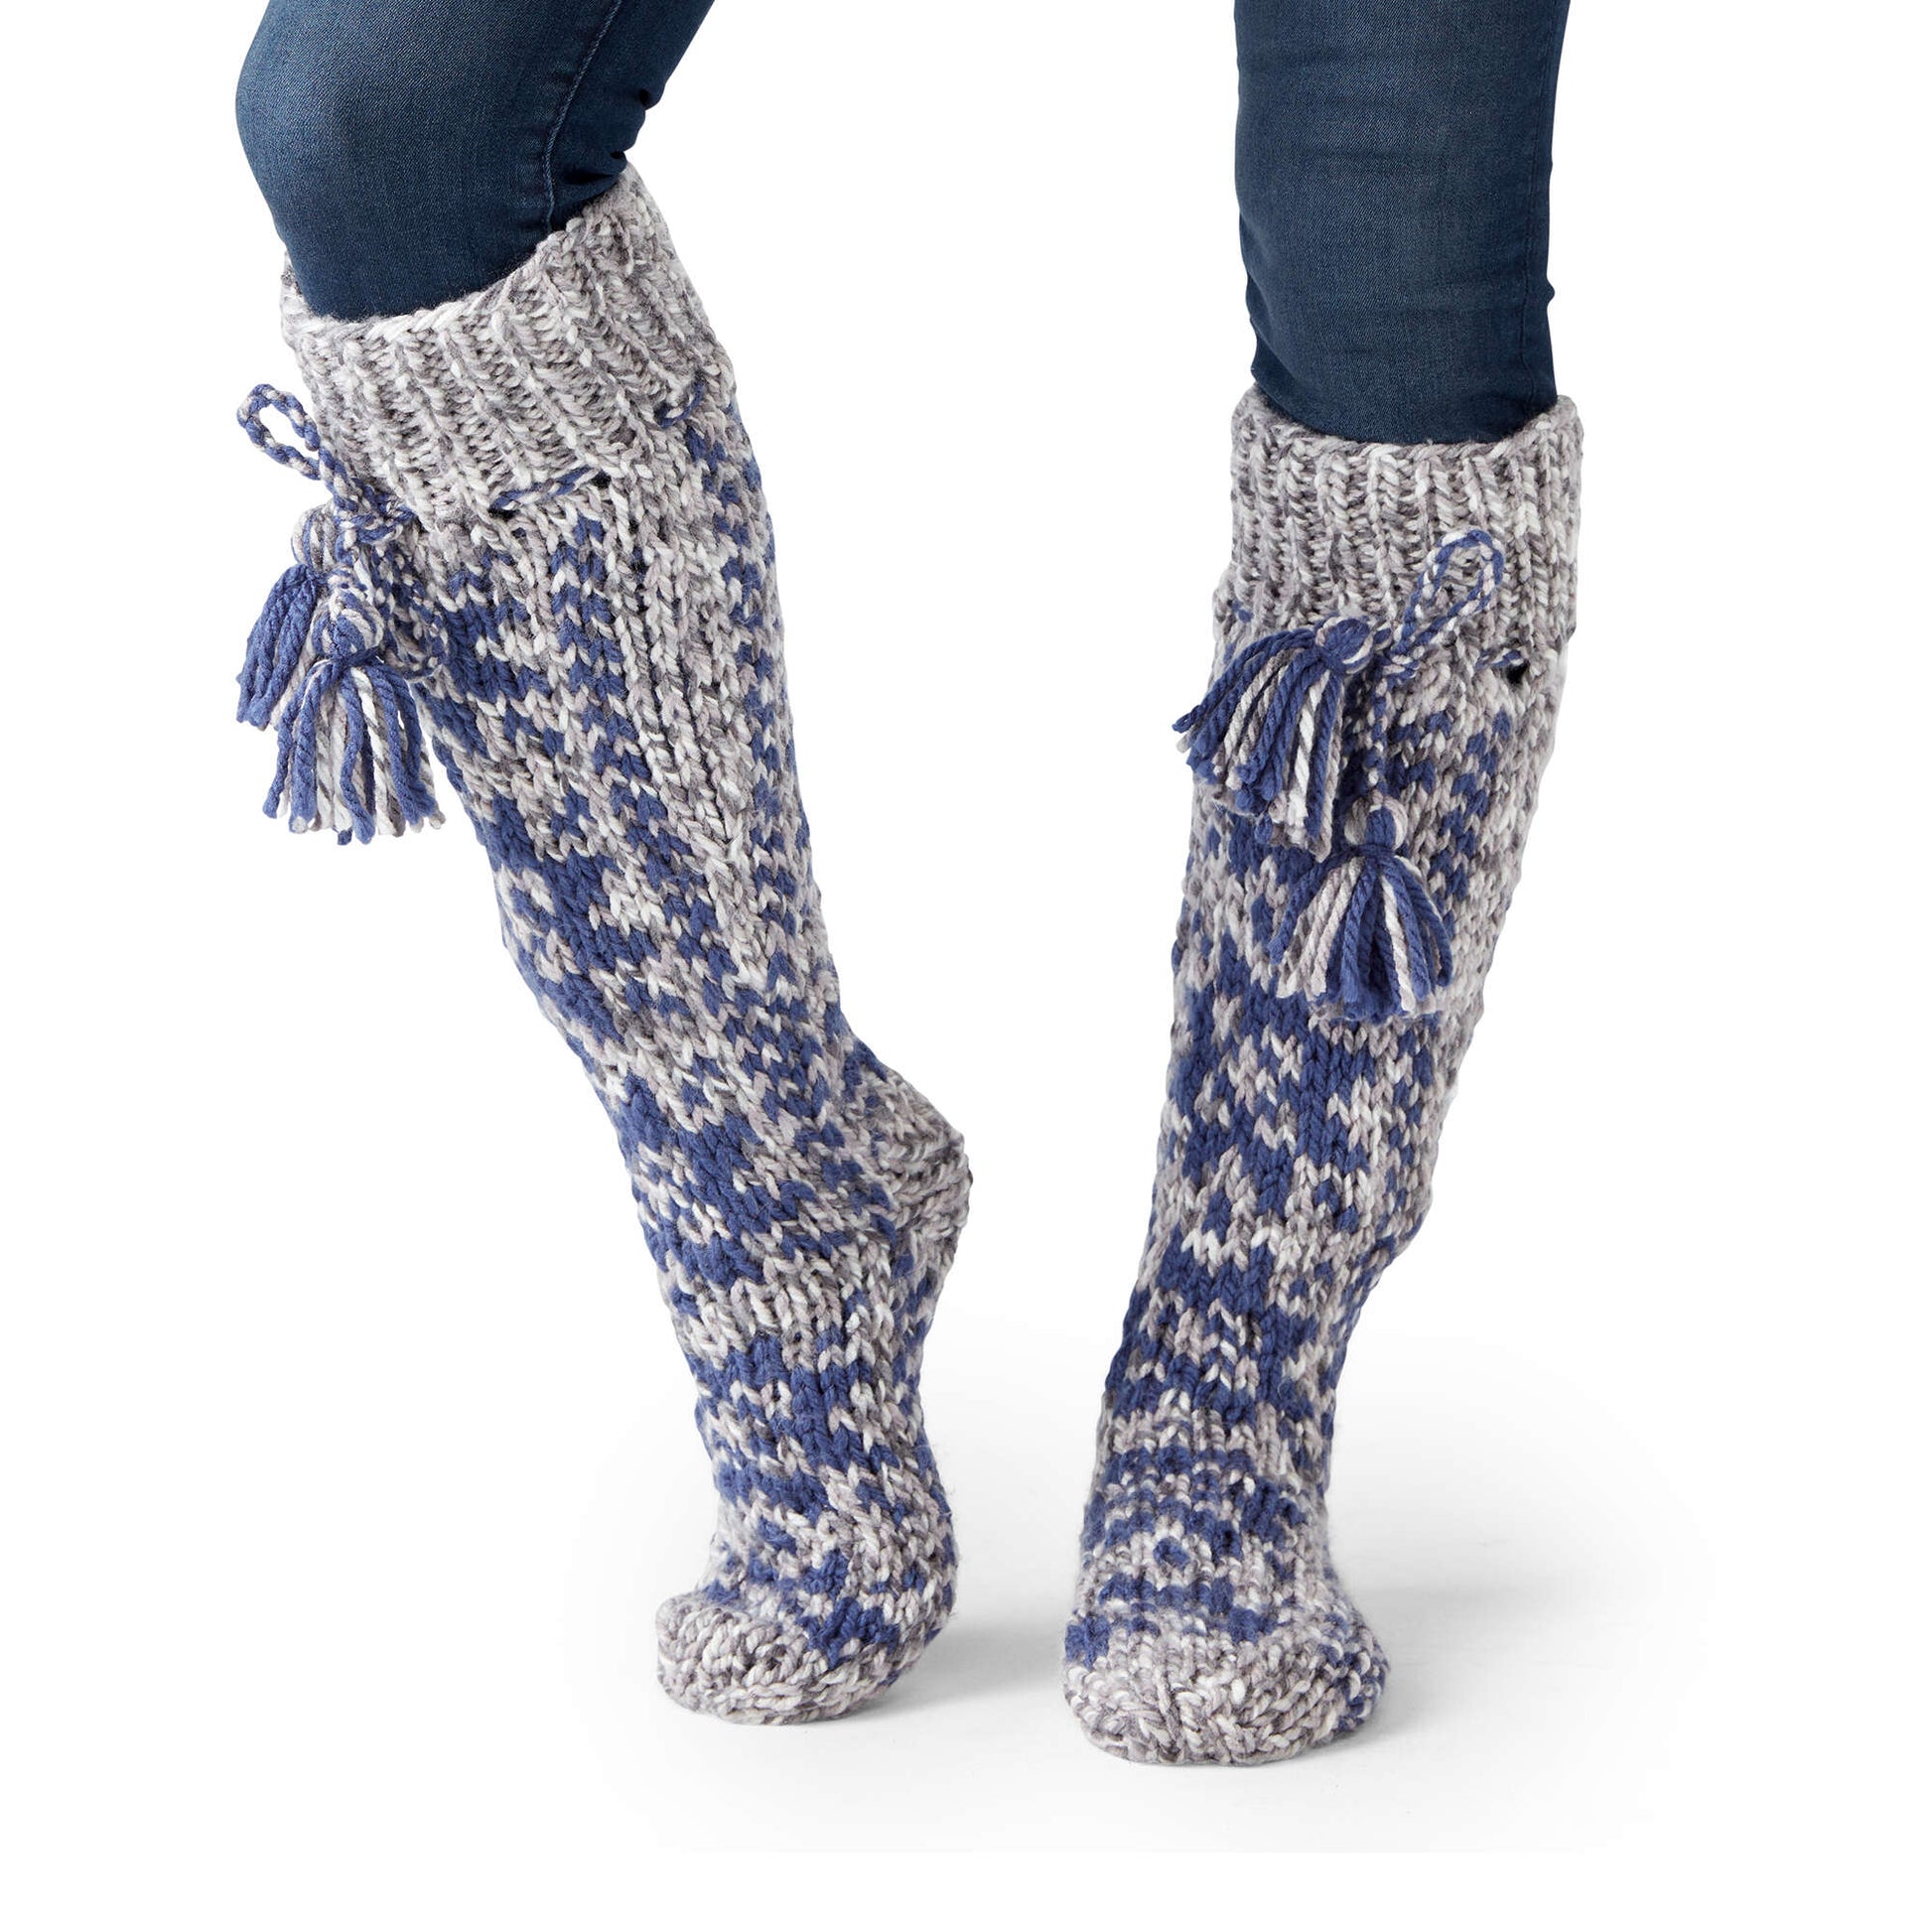 Free Bernat Fair Isle Twist Knit Slipper Socks Pattern